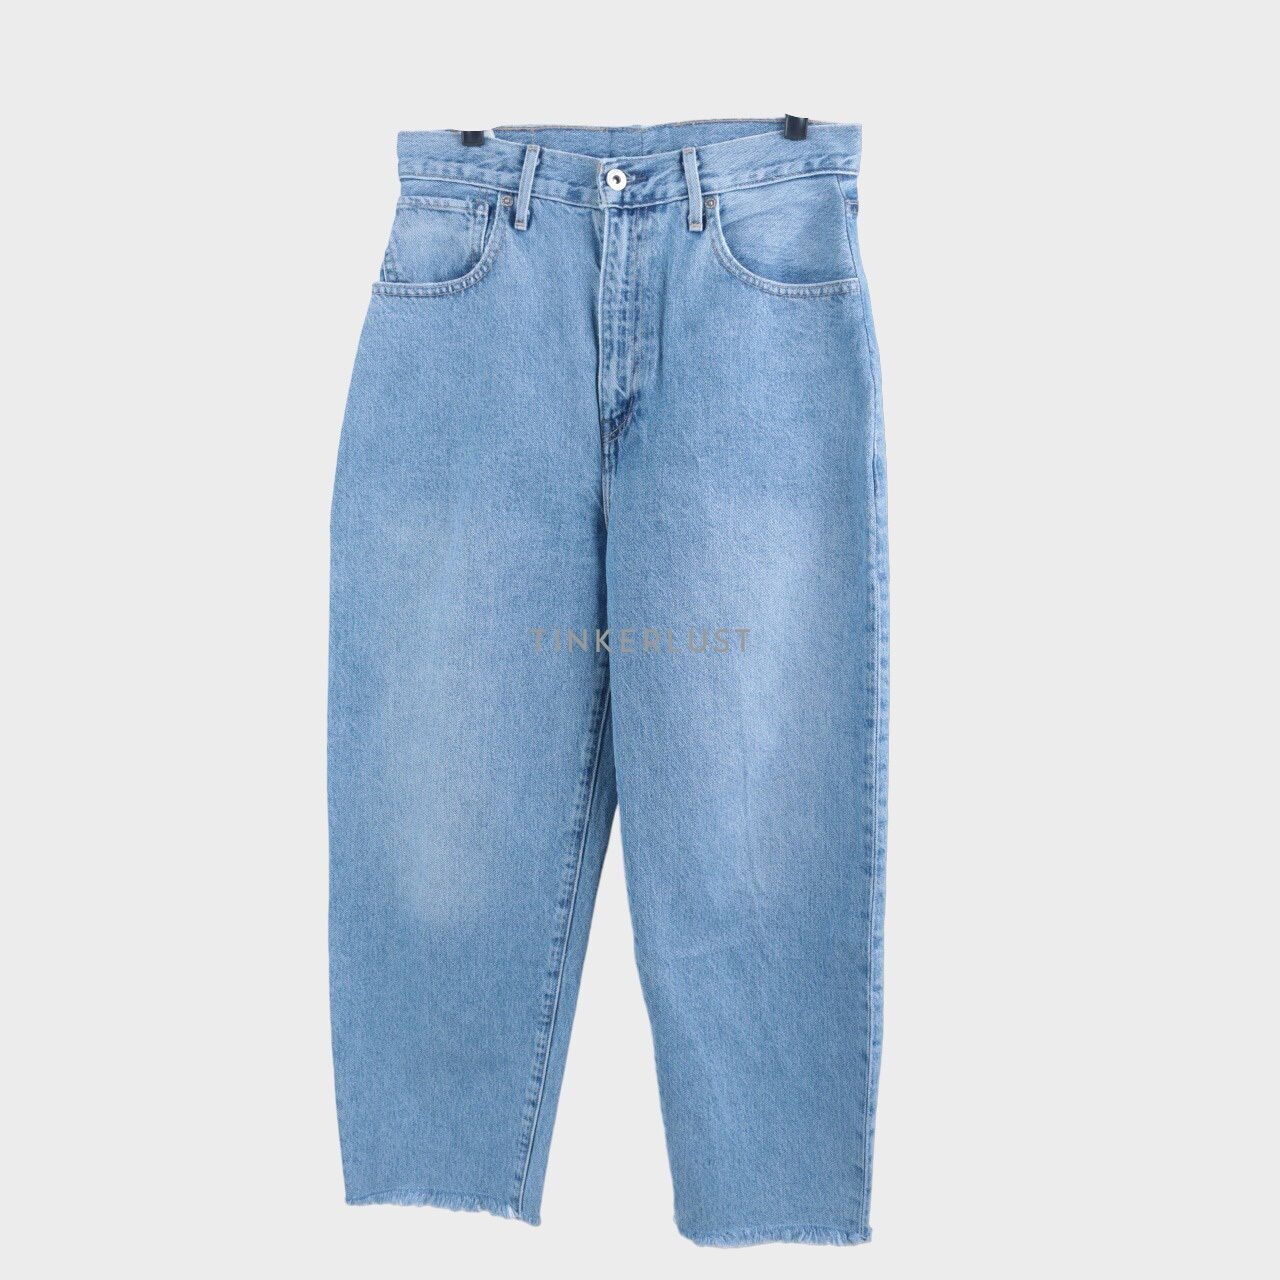 Levi's Blue Jeans Unfinished Long Pants